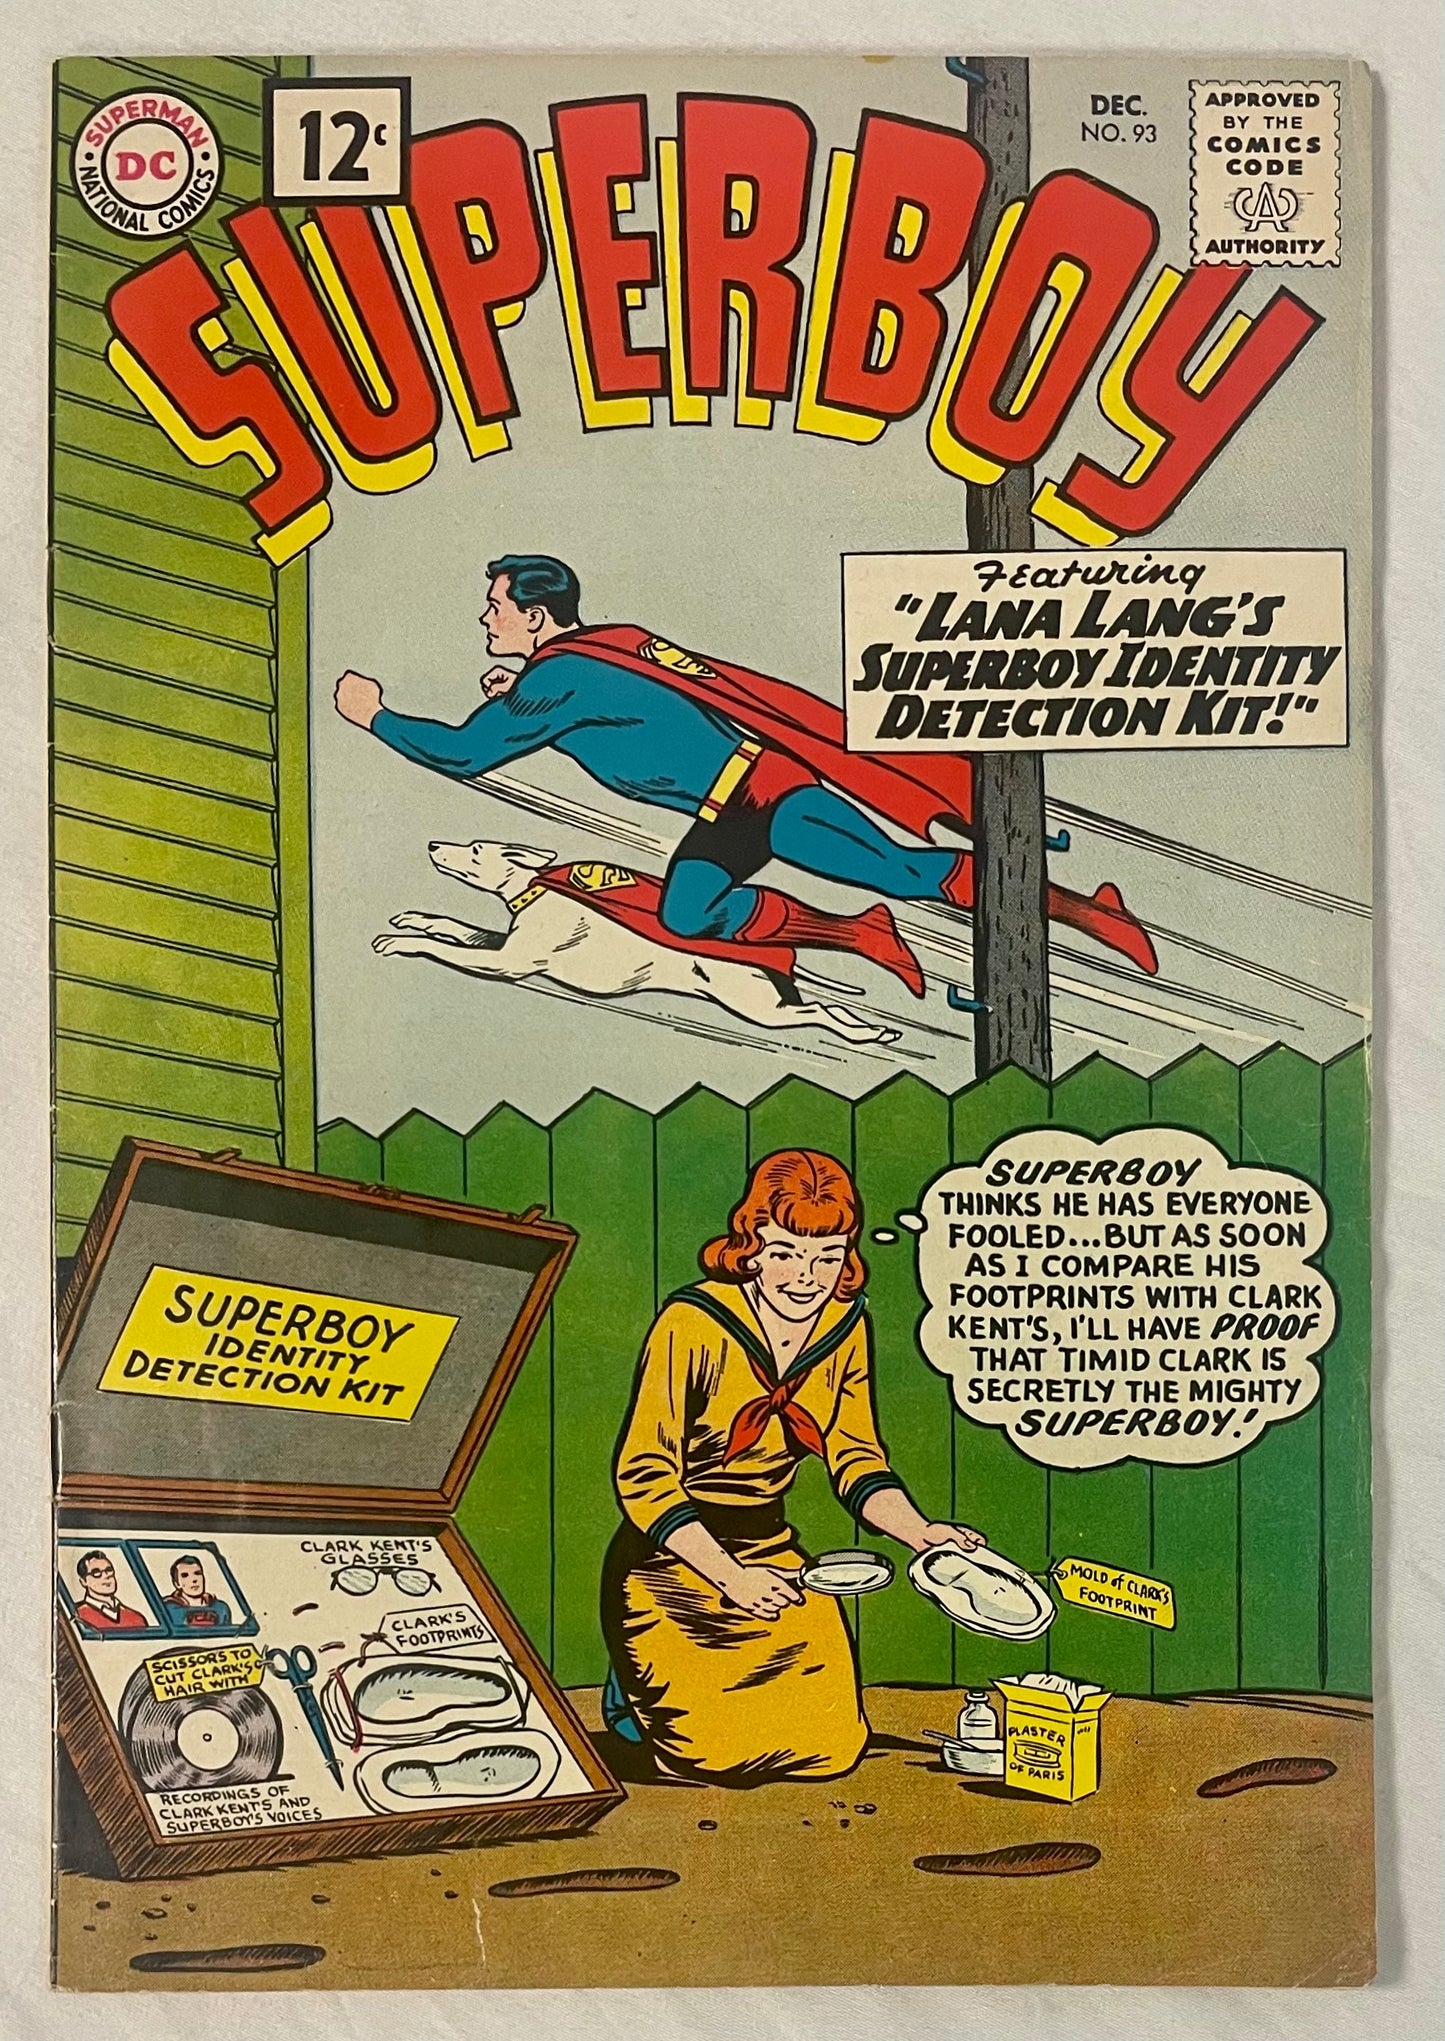 DC Comics Superboy No. 93